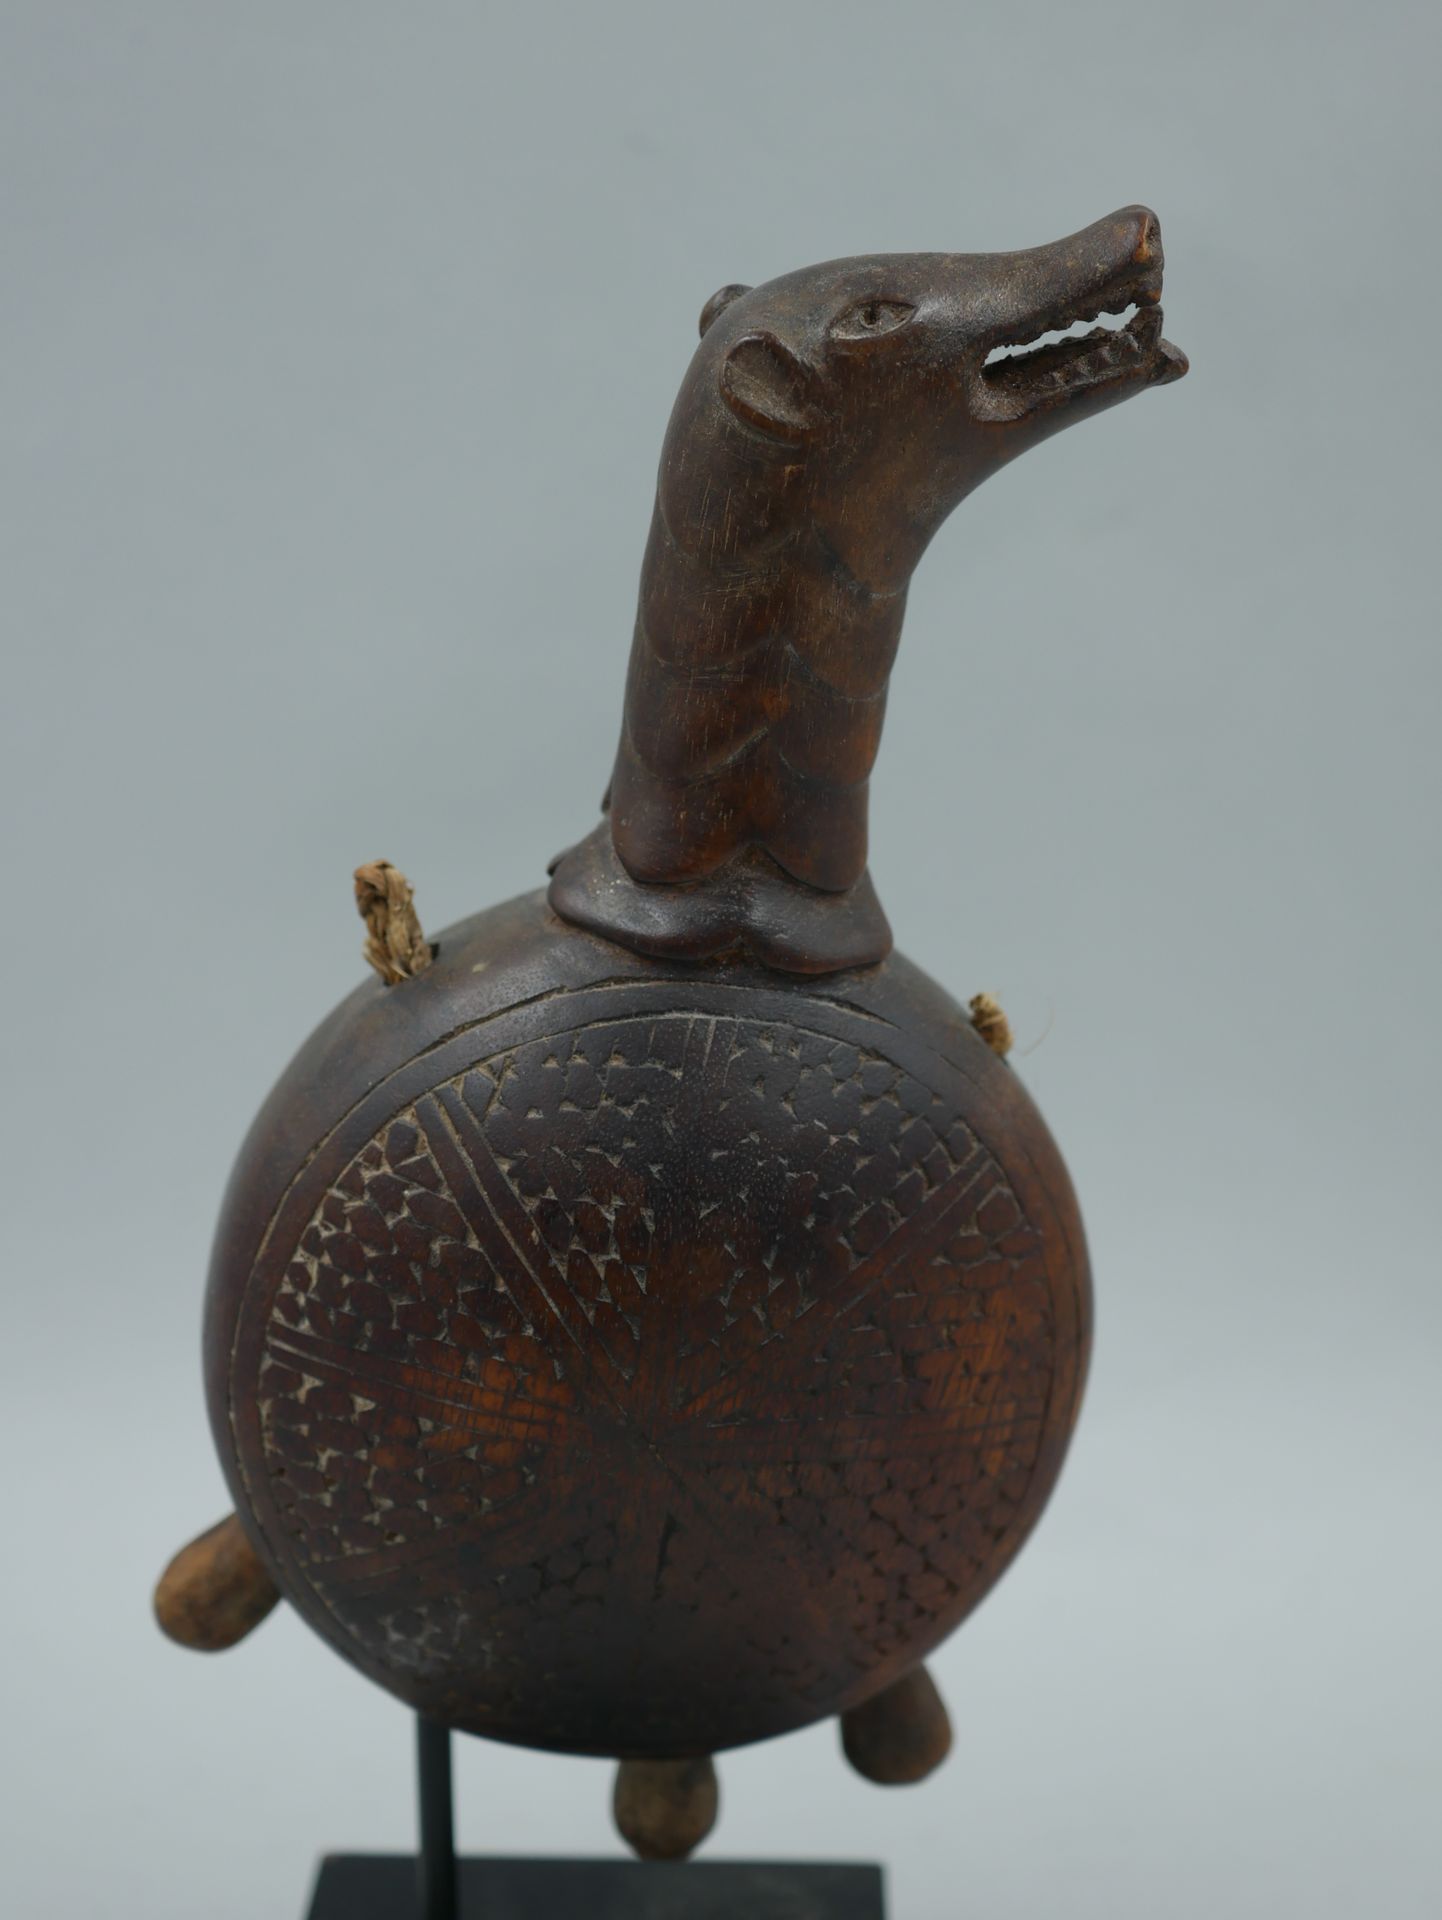 Null 冈比亚民主共和国。康戈。雕刻的木钟，握柄是动物头的形状。19世纪。高度：18厘米。

卢卡斯-拉顿的《动物》一书第114页上有一个与我们的钟非常相似的&hellip;